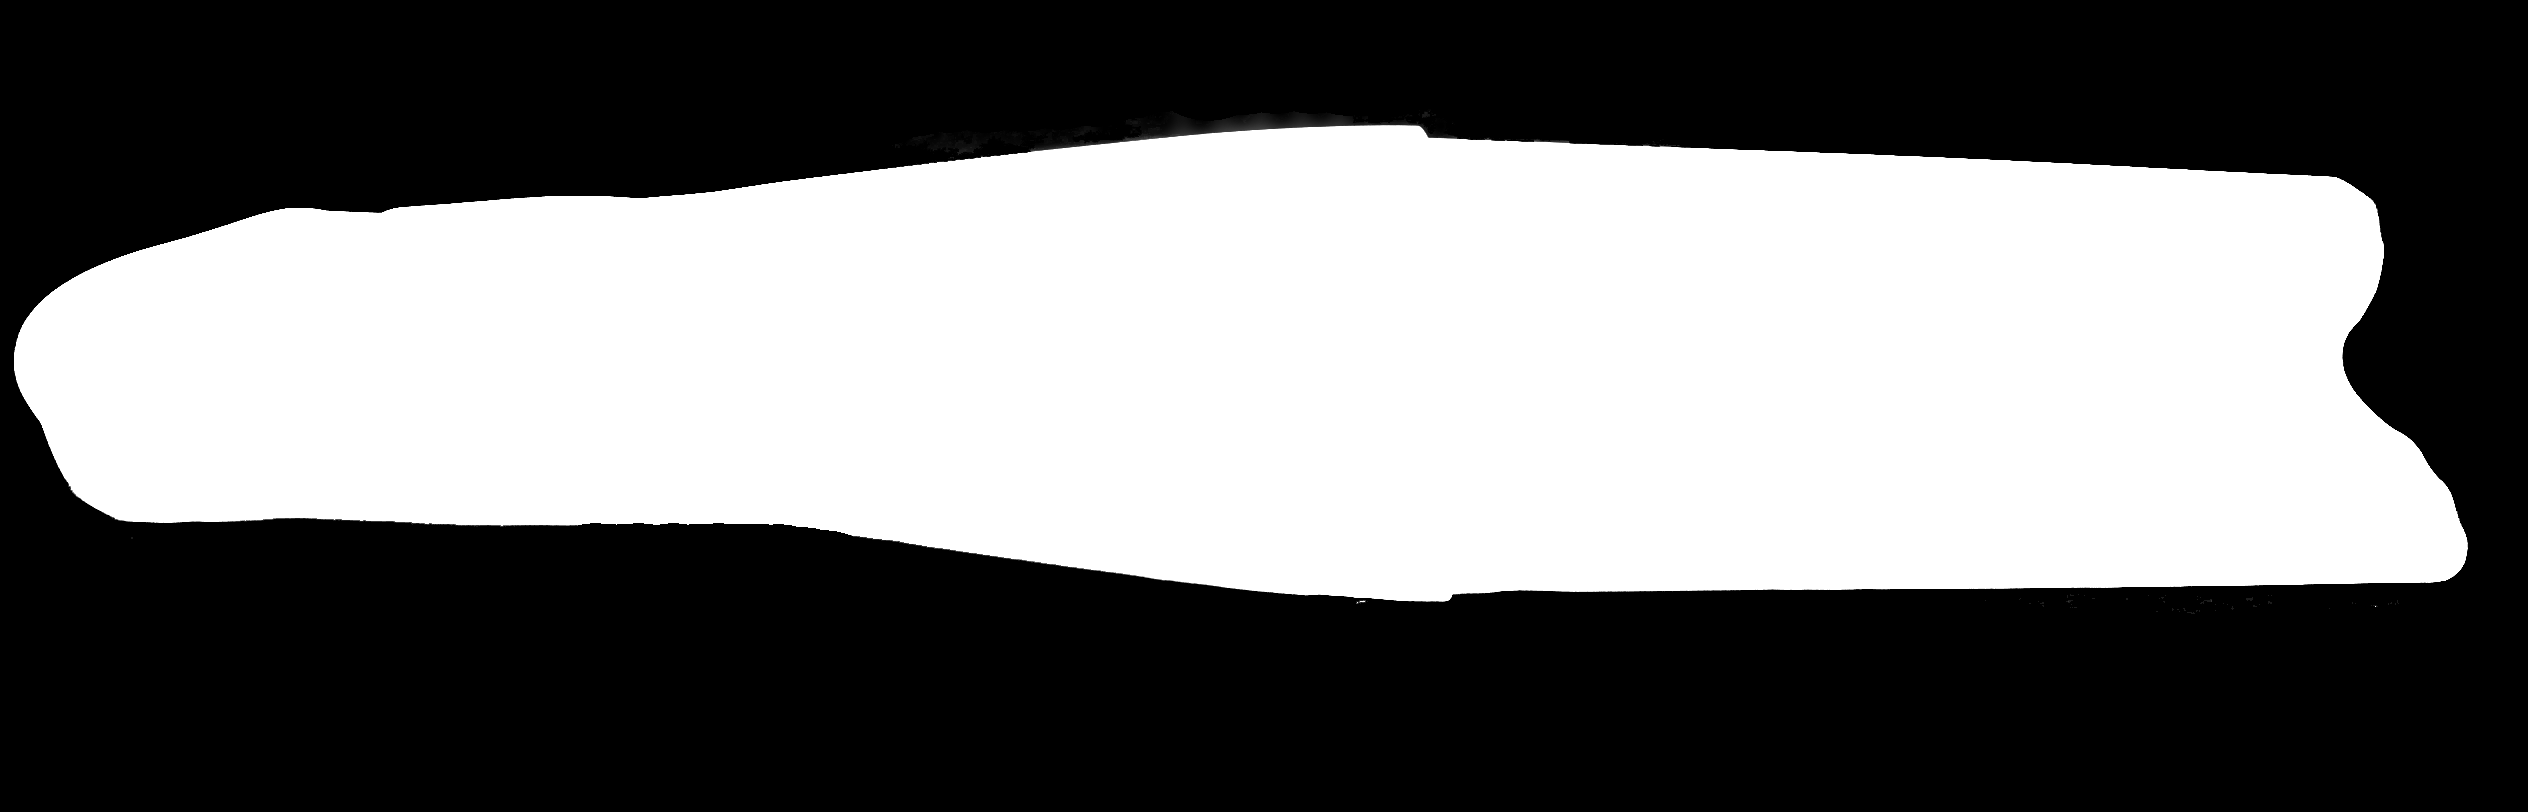 S 40-41 M 42-43 L 44-45 XL 46-47 S 36-40 M 40-44 Şnorkel ve Dalış Paleti Yalın Ayak Giyilir Hafif yapısı ile bacak kramplarını engeller.